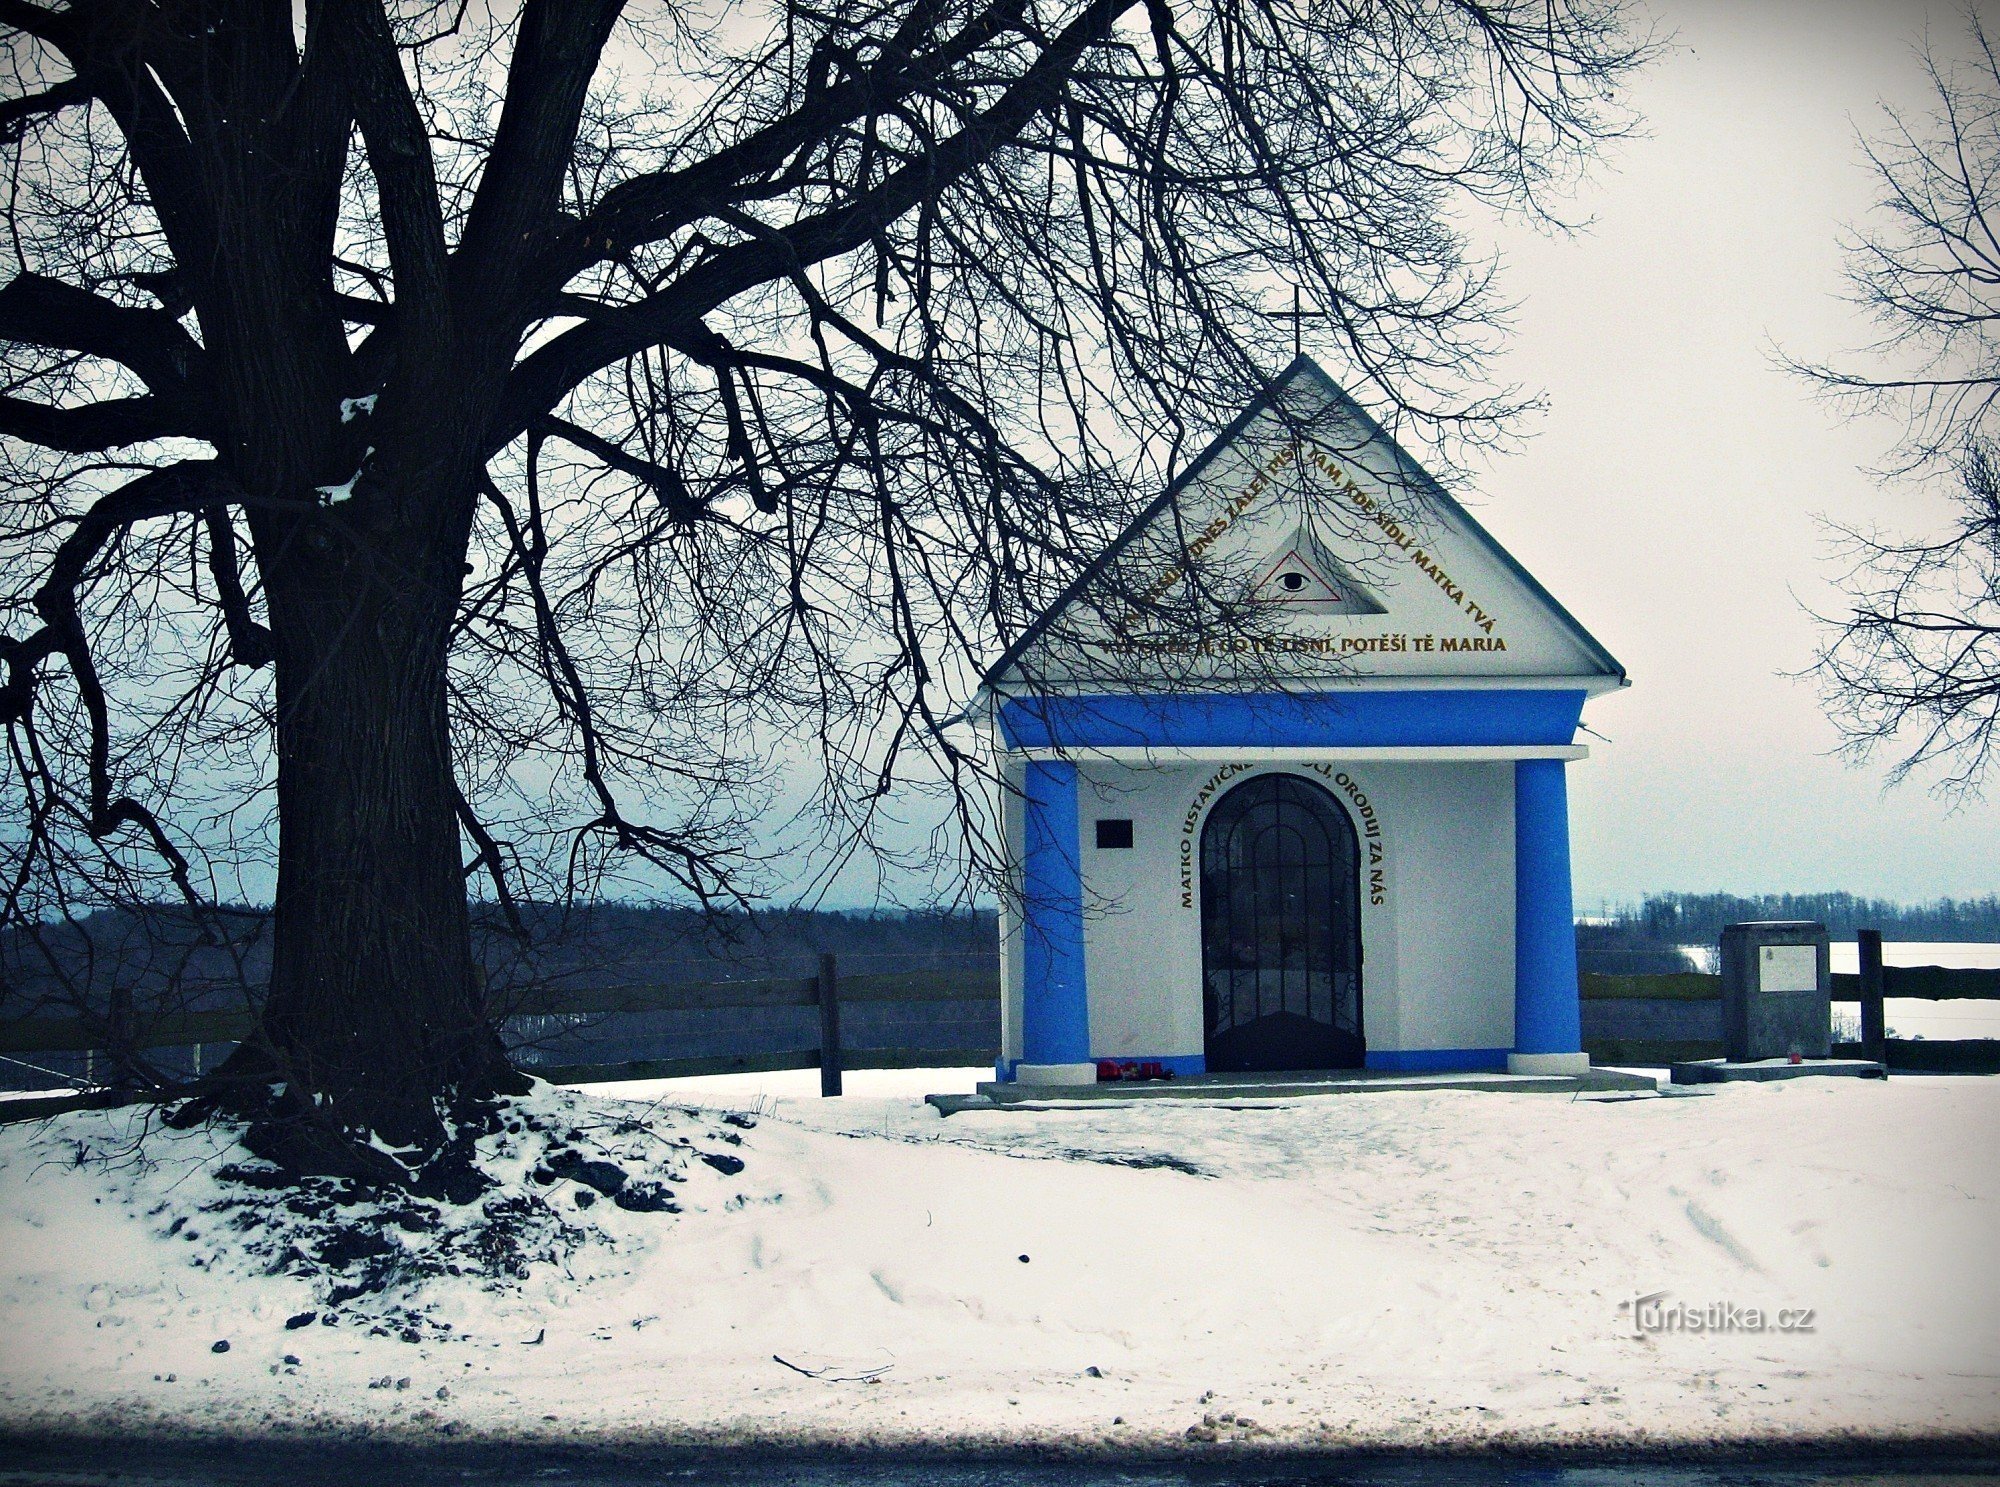 Příluky - chapel of the Virgin Mary